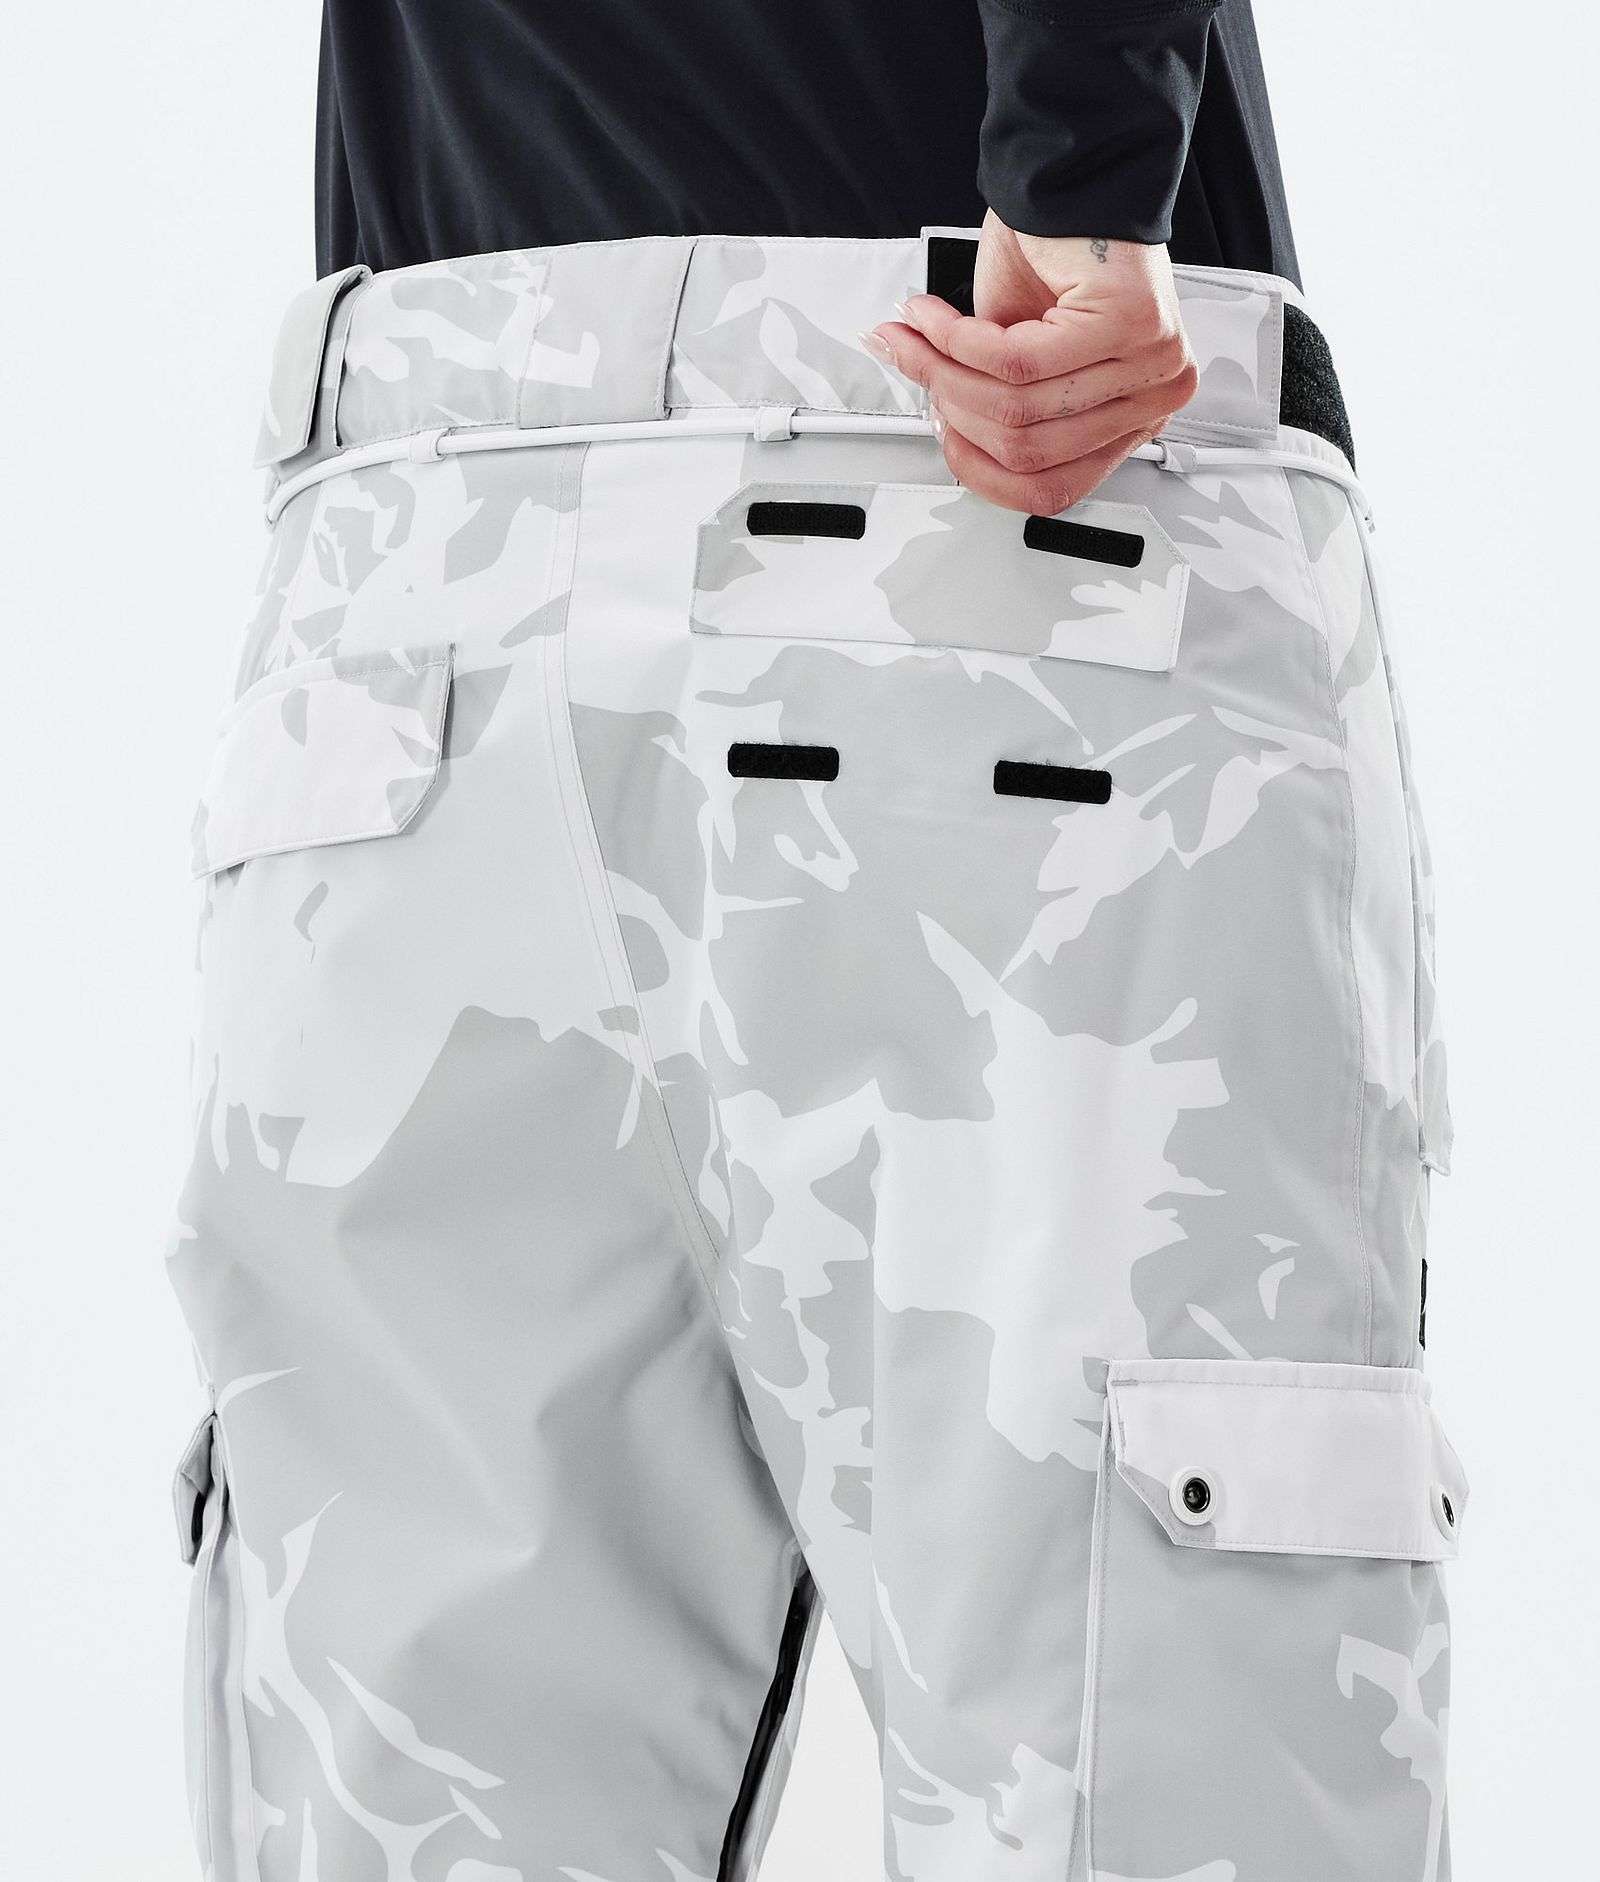 Pantalons de snow Femme  Roxy Formation - Combinaison de snow pour Femme  TRUE BLACK SAMMY • A BrasTendus